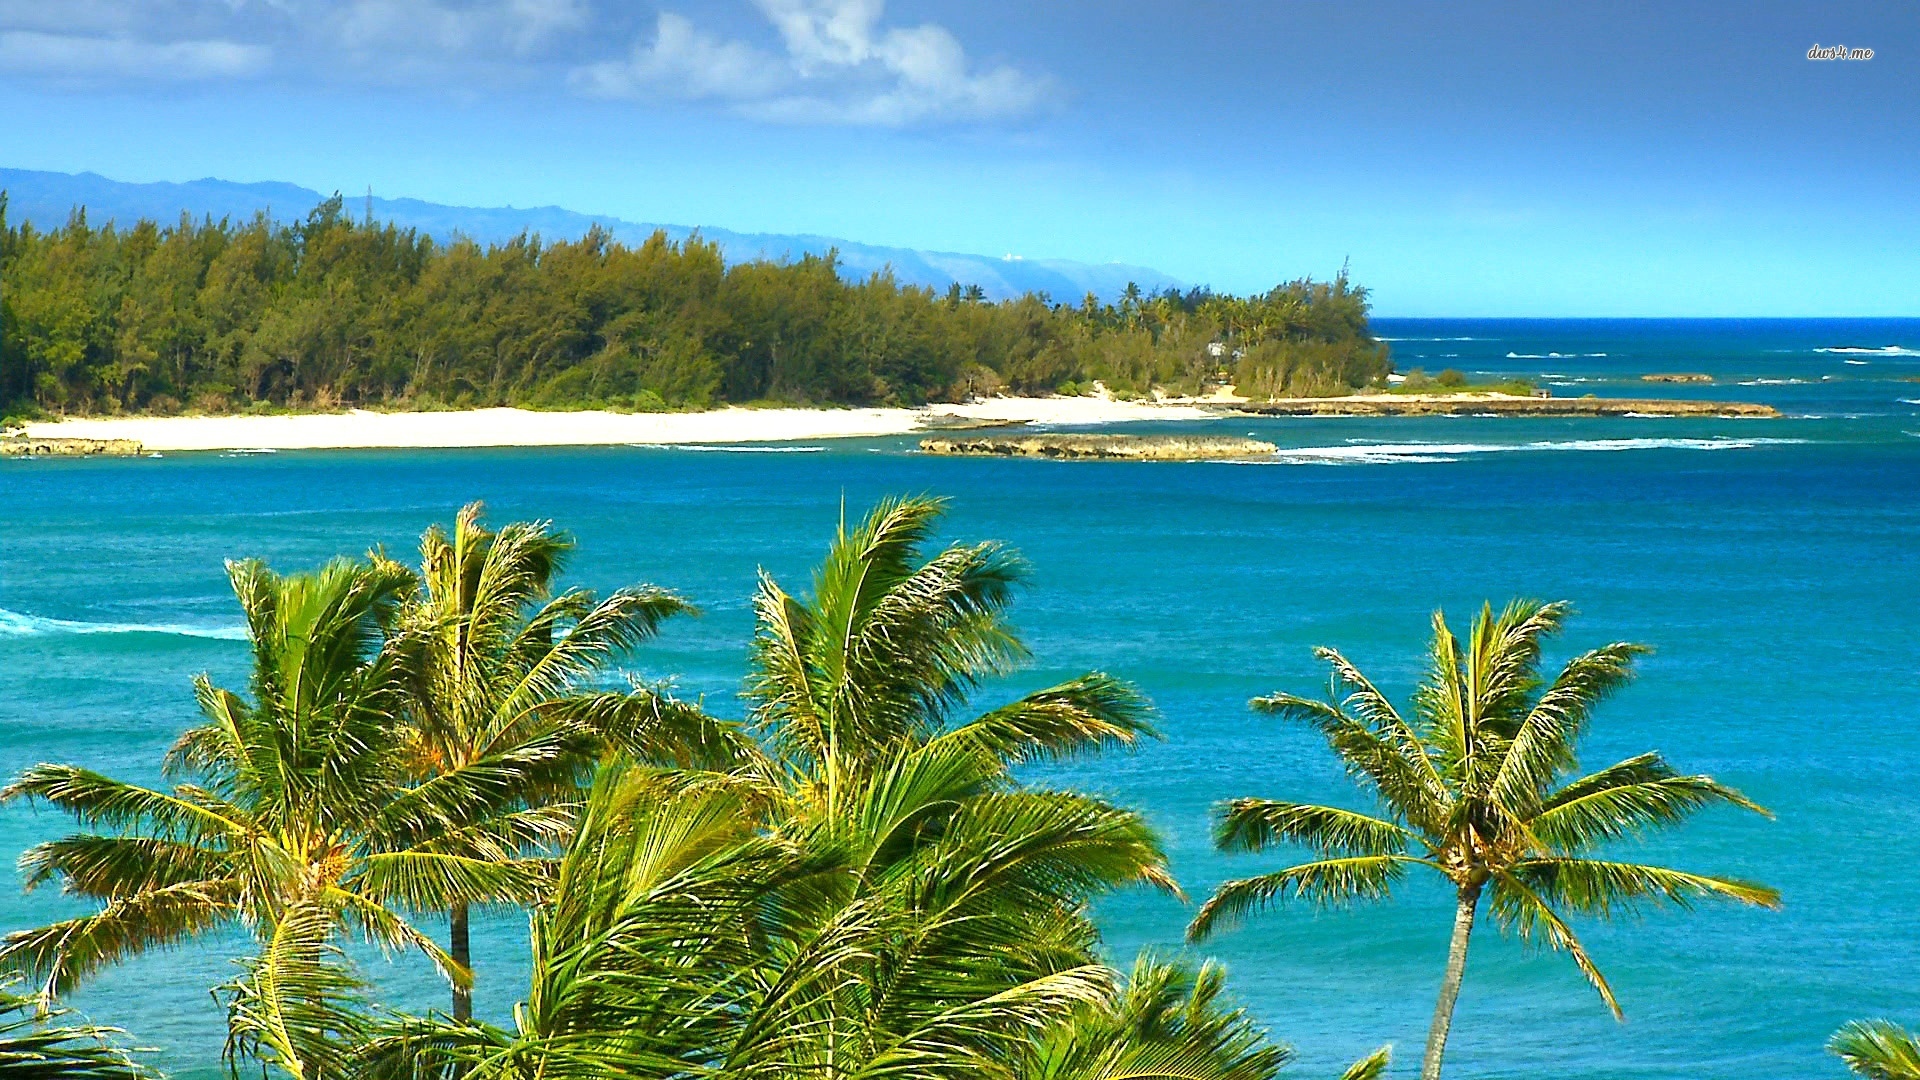 windy beach in hawaii Desktop Backgrounds for Free HD Wallpaper